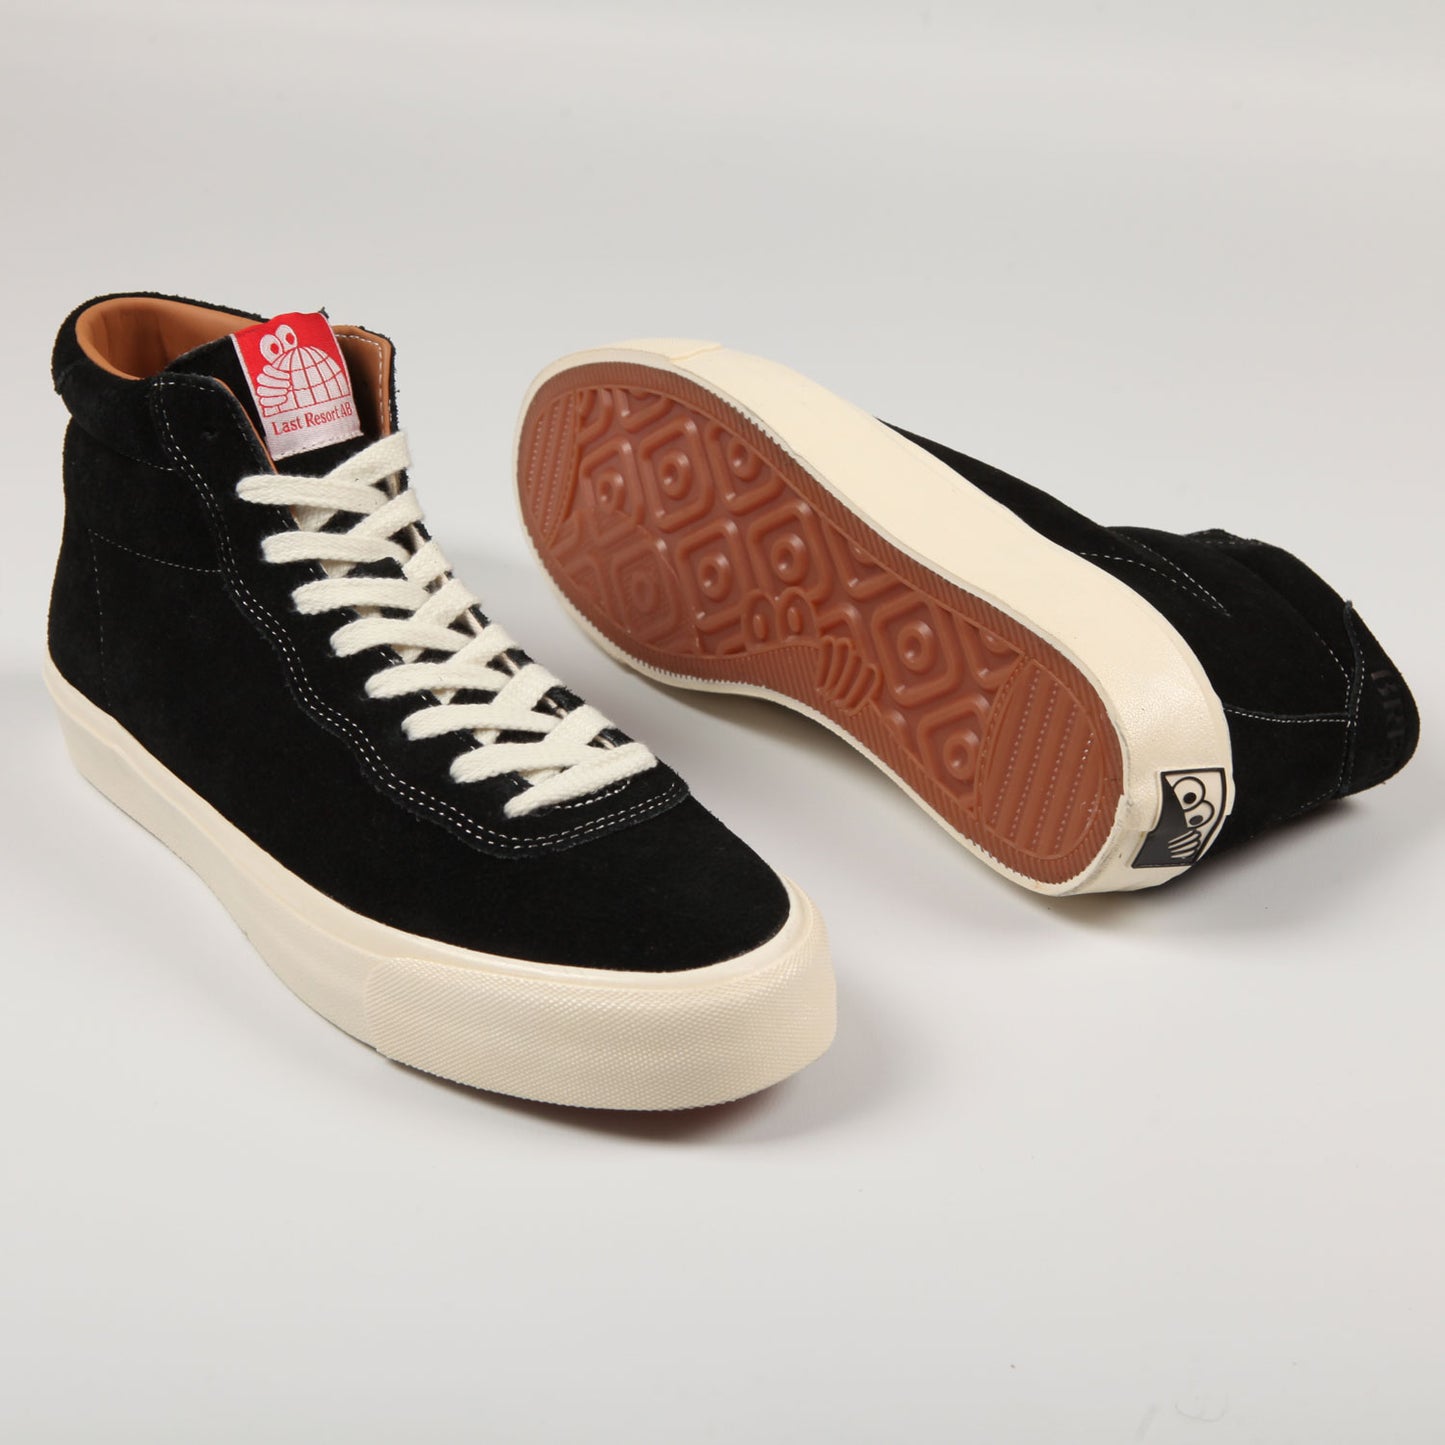 Last Resort 'VM001 Suede Hi' Skate Shoes (Black / White)